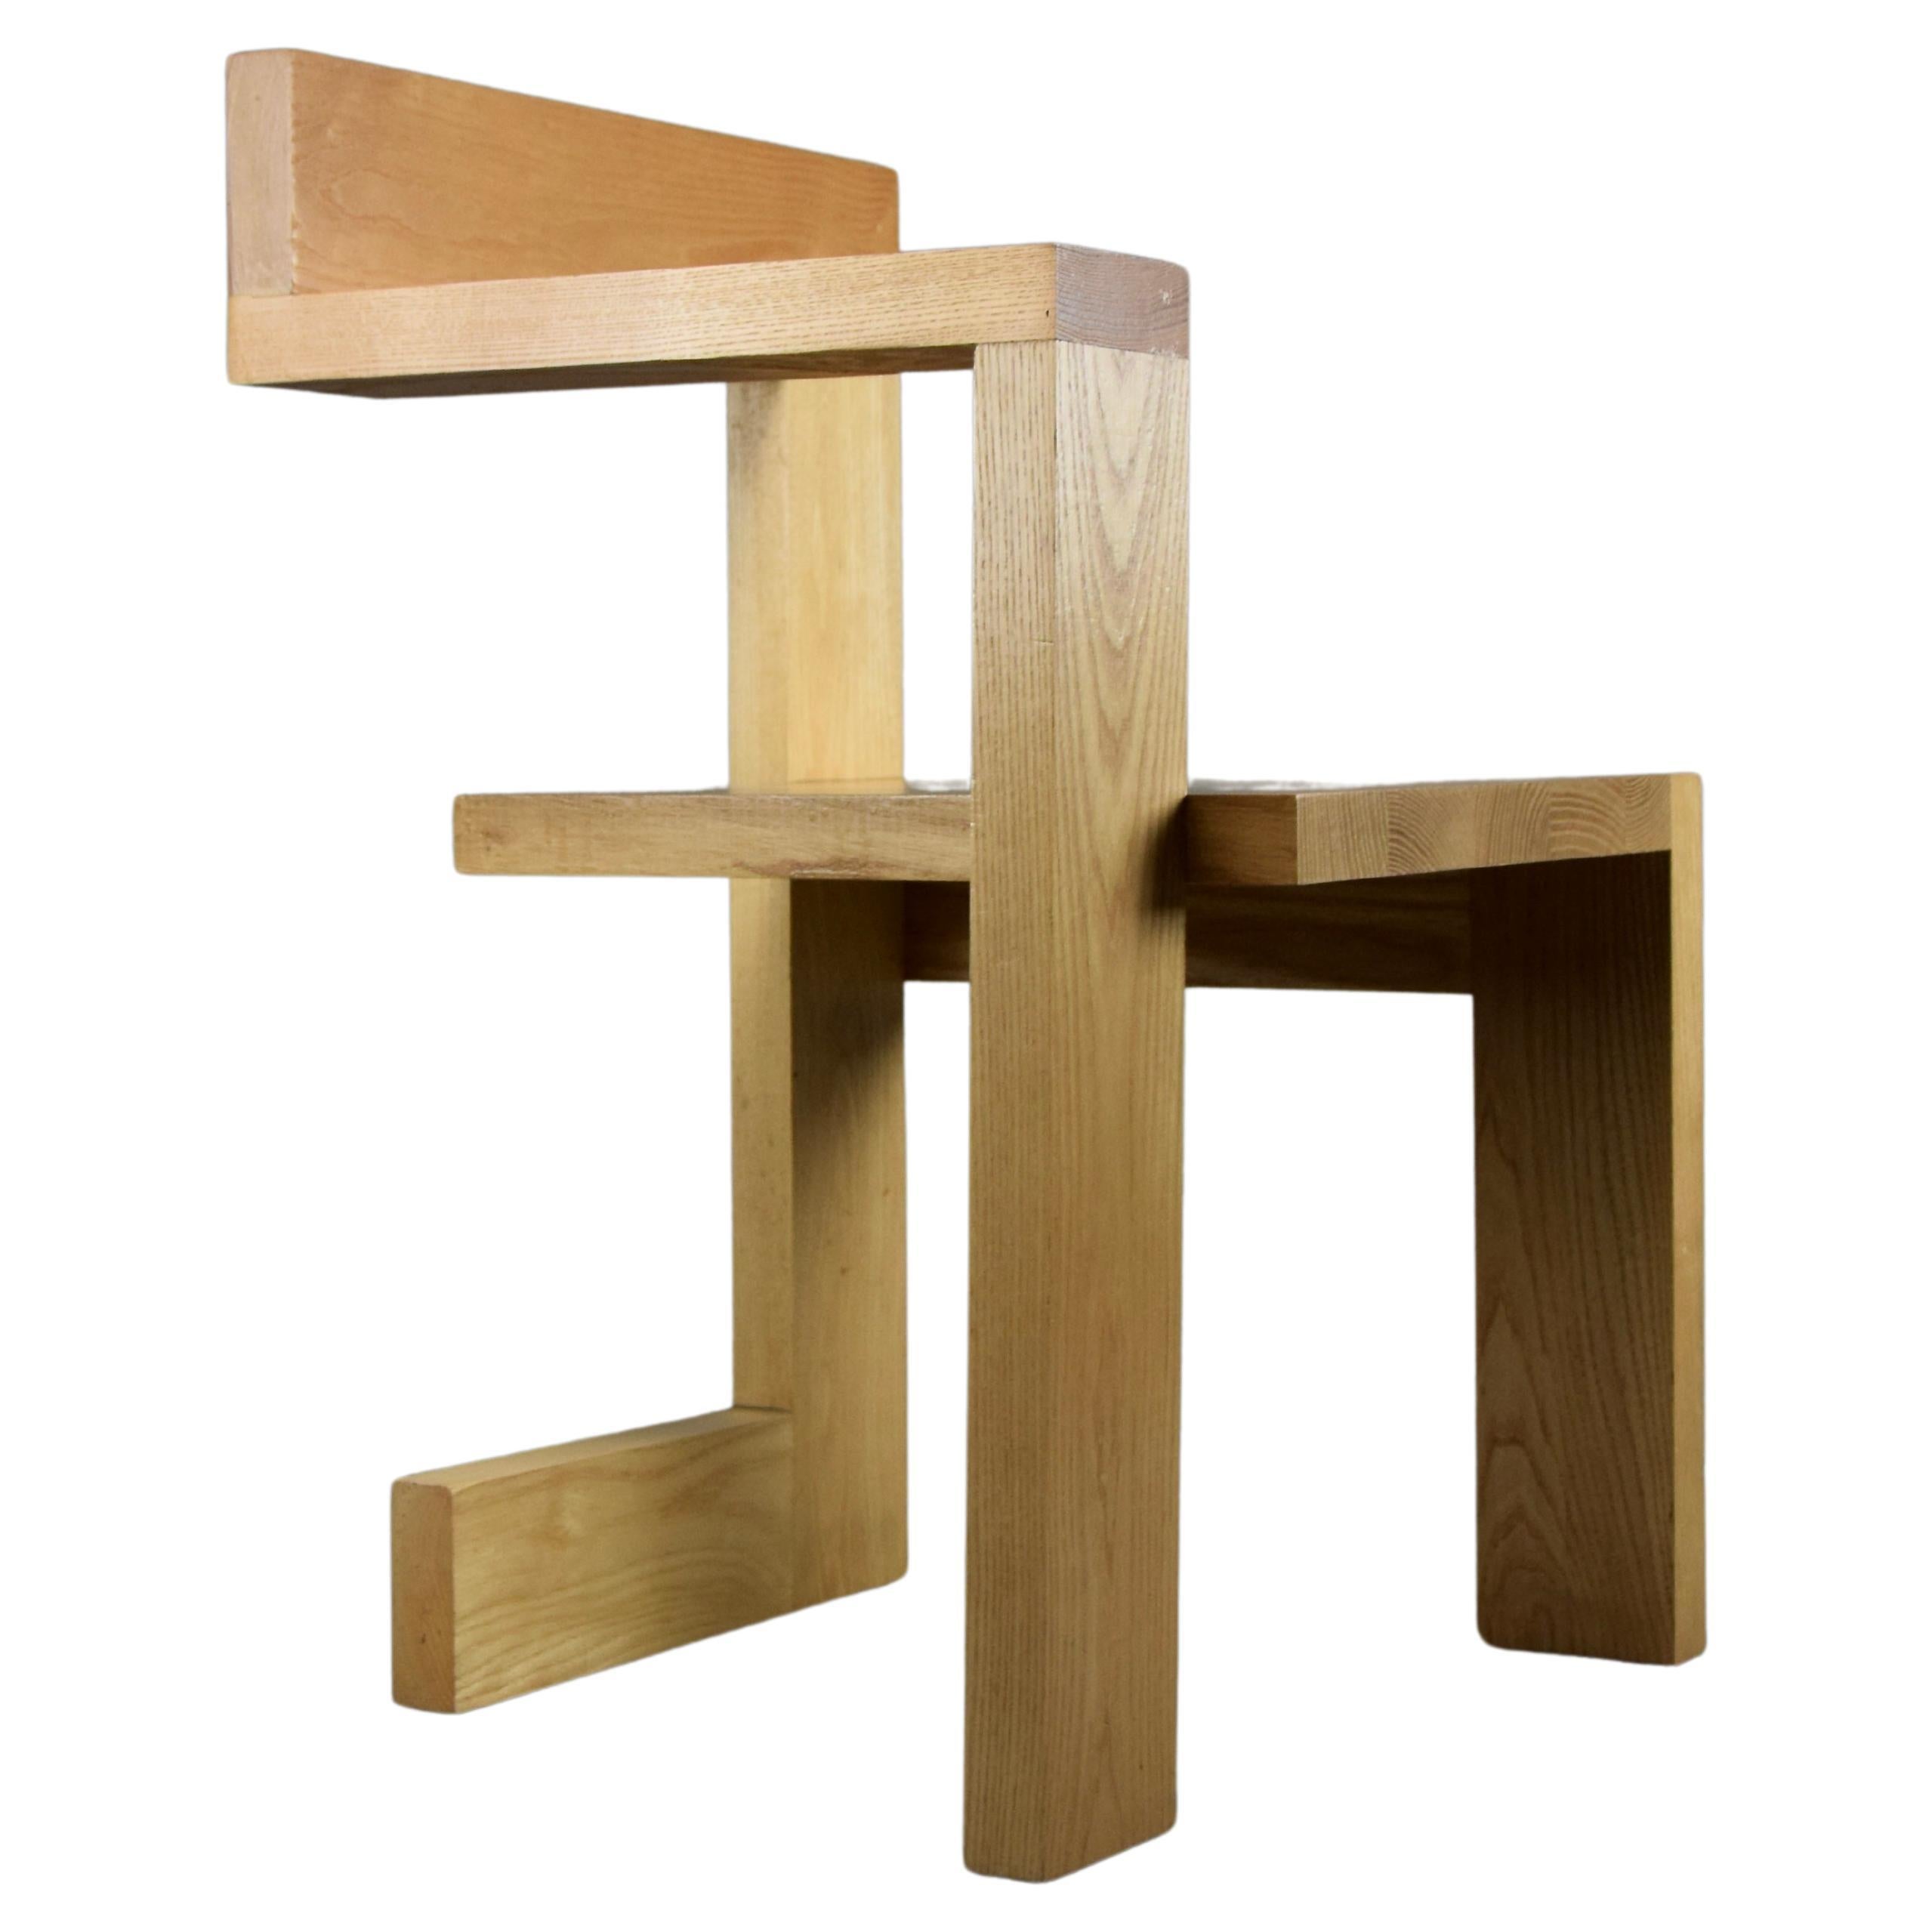 Steltman Chair after Gerrit Rietveld